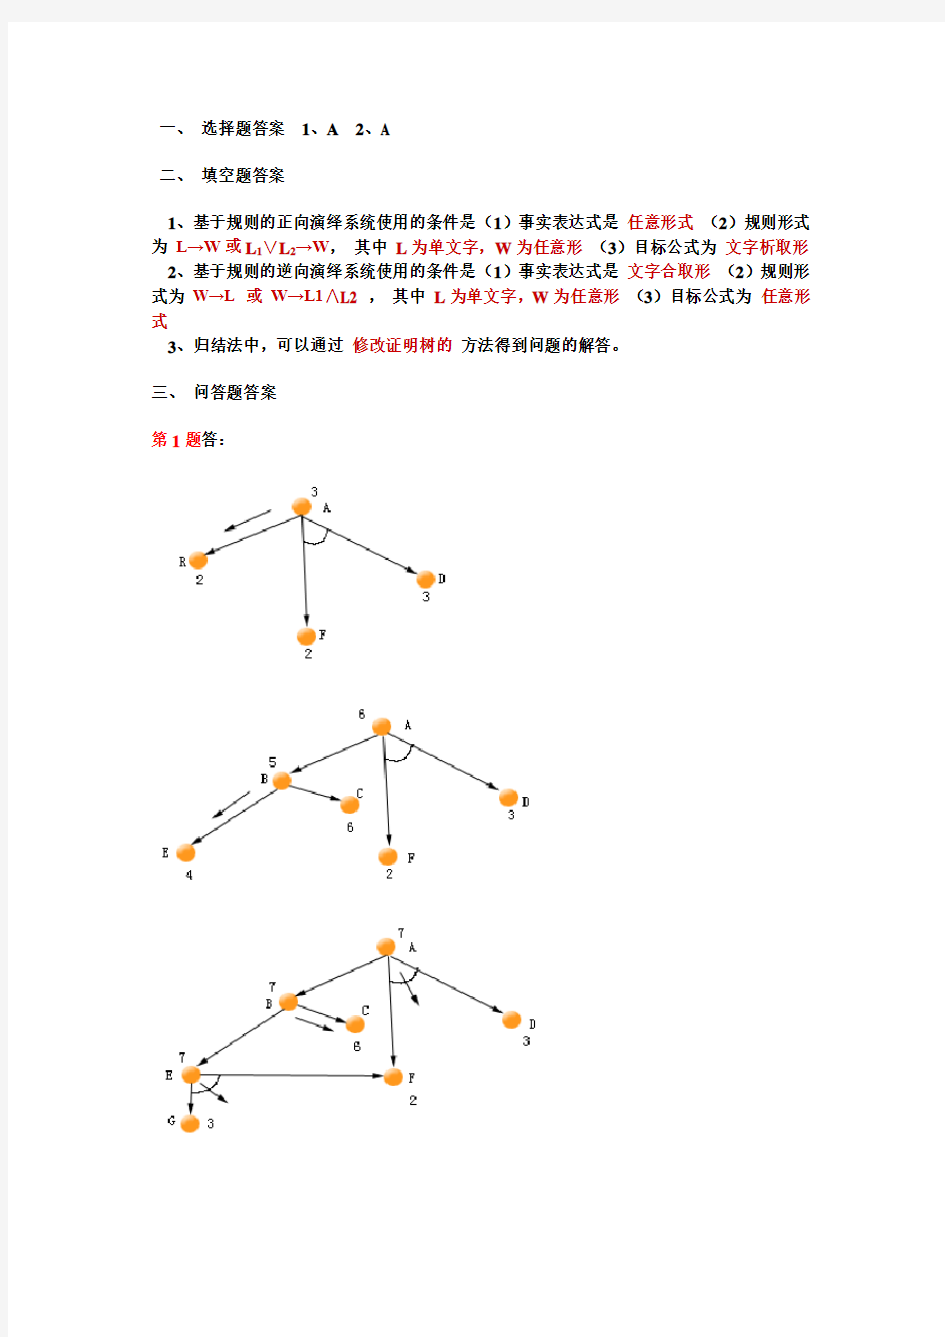 《人工智能导论》课程期末考试试卷二   答案   (上海交大)